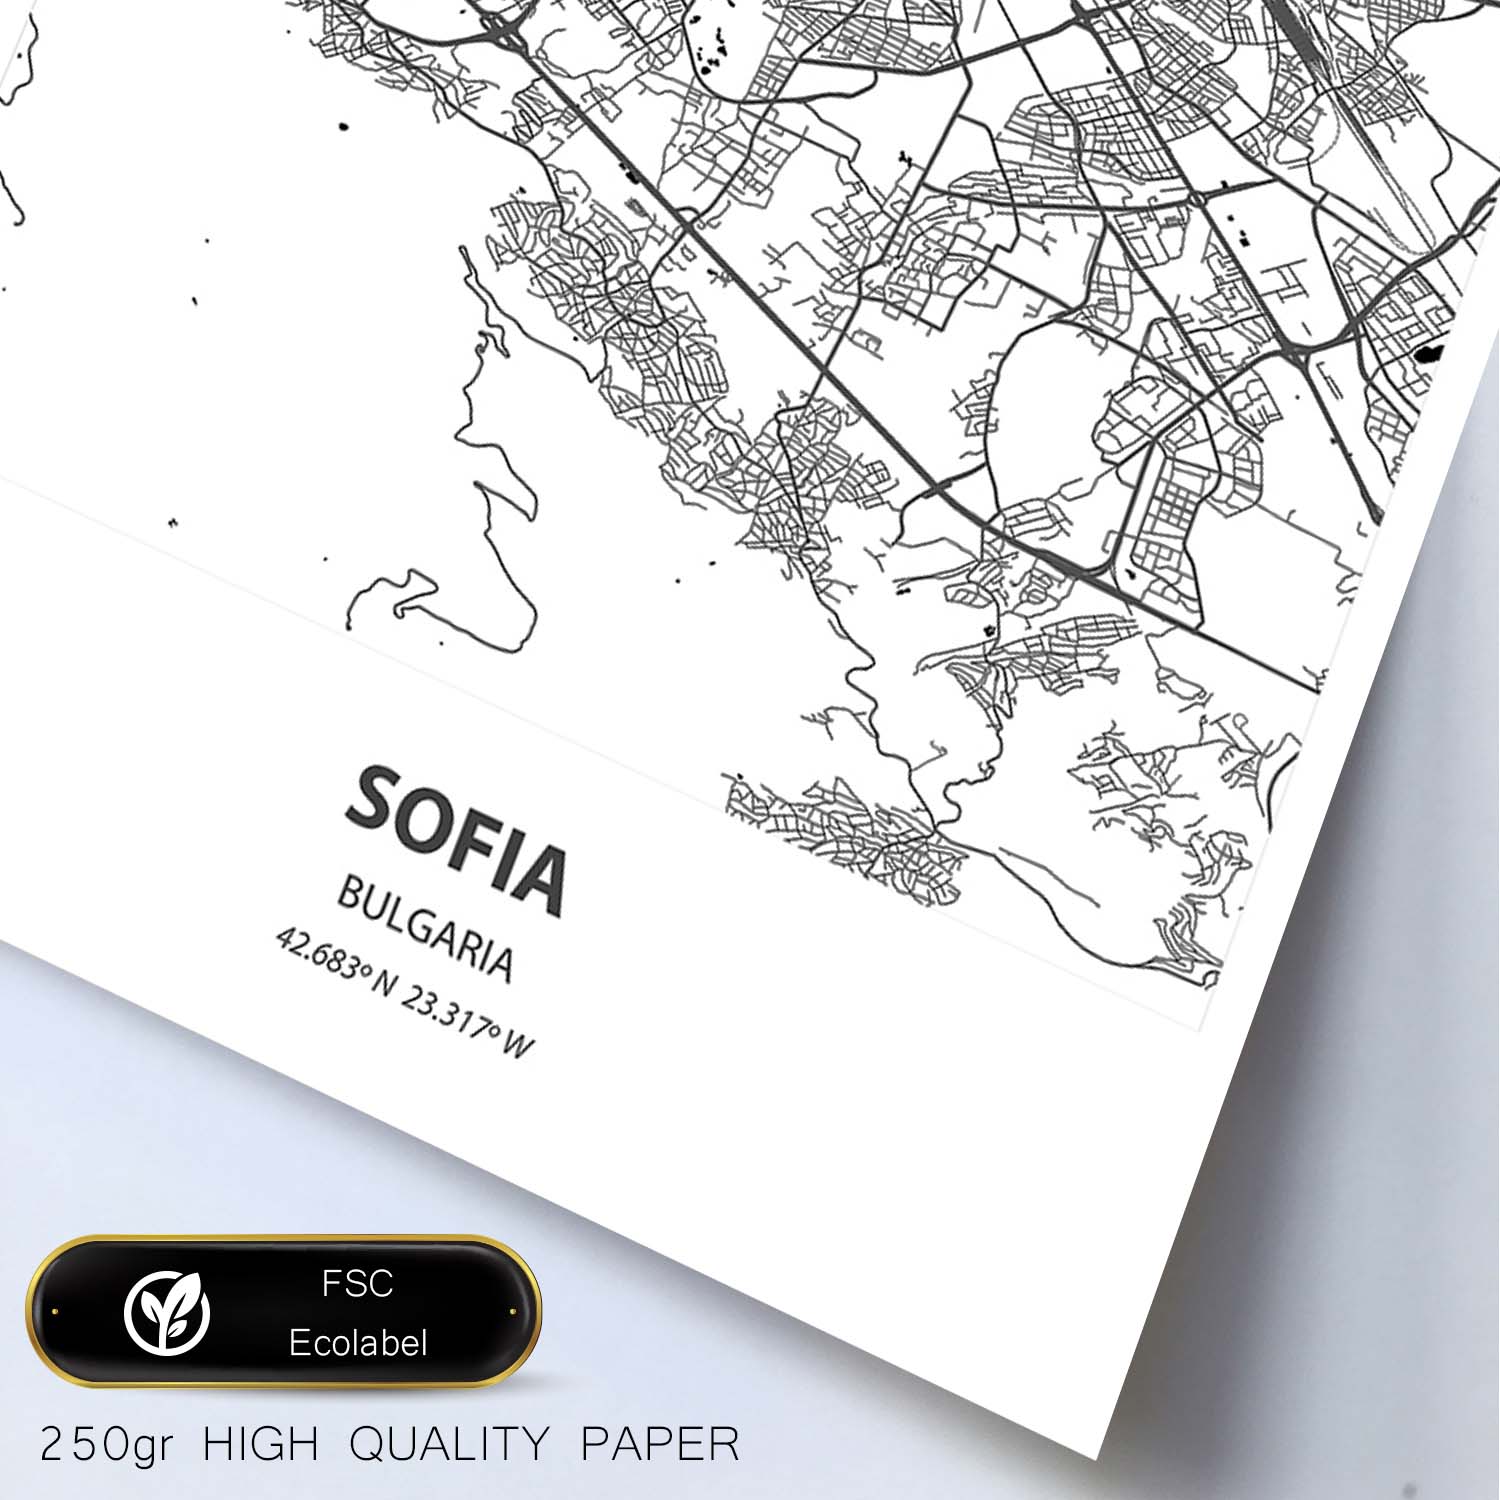 Poster con mapa de Sofia - Bulgaria. Láminas de ciudades de Europa con mares y ríos en color negro.-Artwork-Nacnic-Nacnic Estudio SL